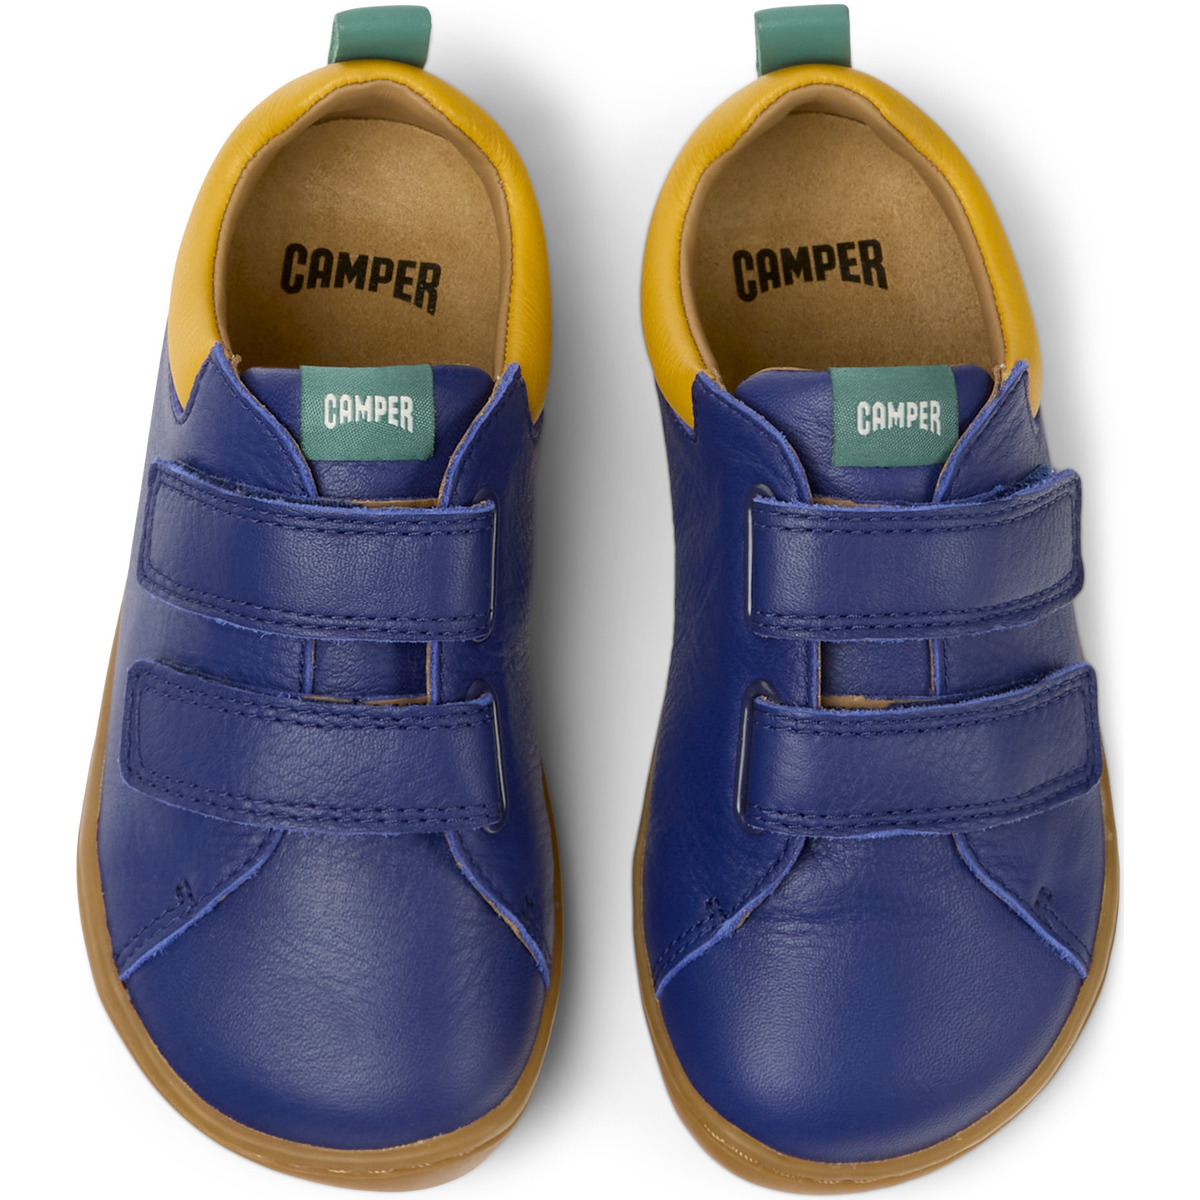 Camper Bleu Sneaker Peu Cami cuir 4U1ITeI2